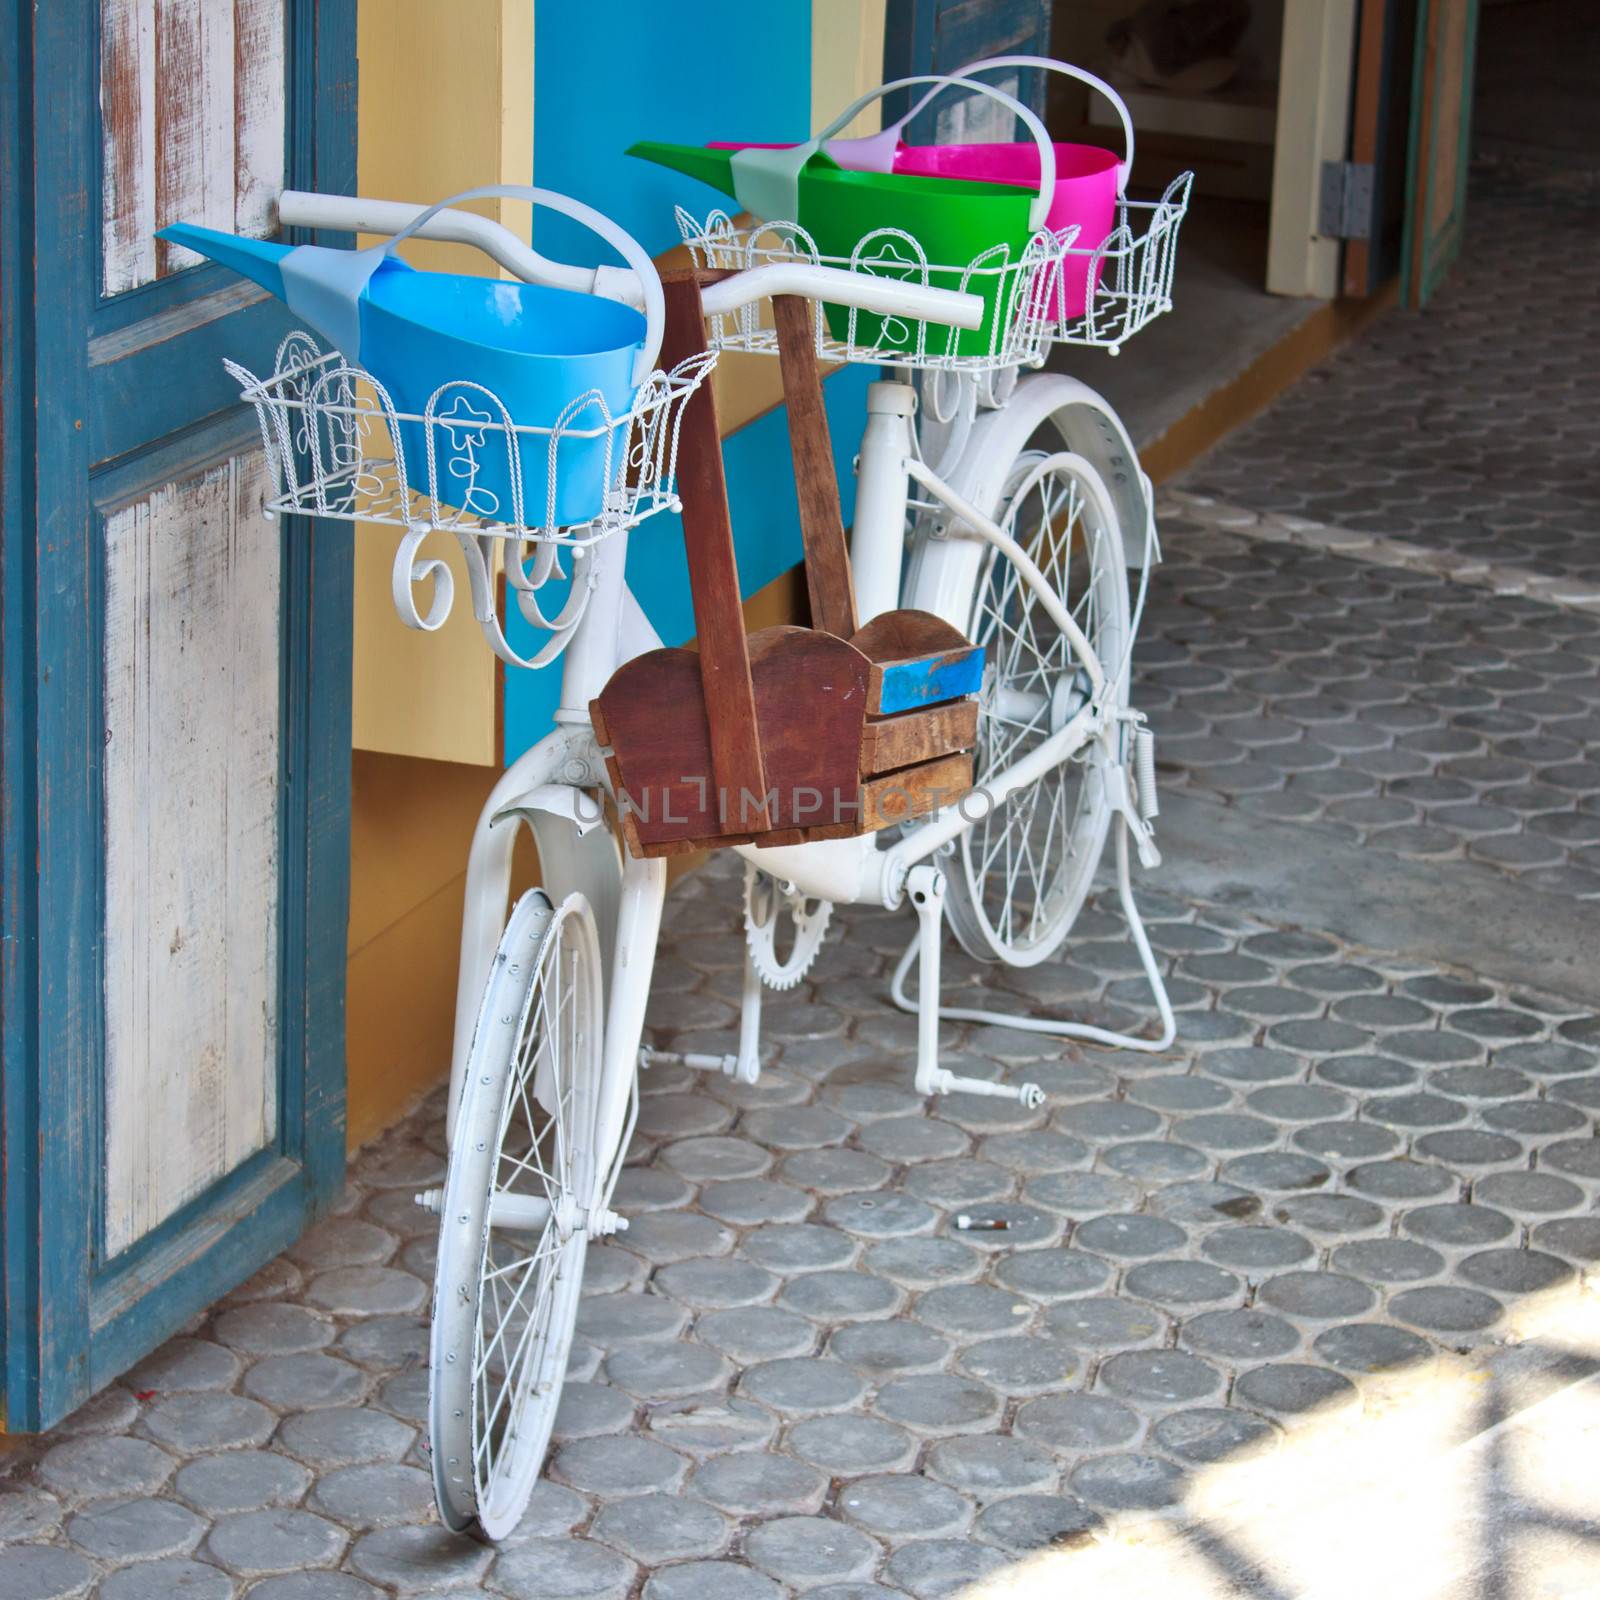 Vintage bicycle by redthirteen